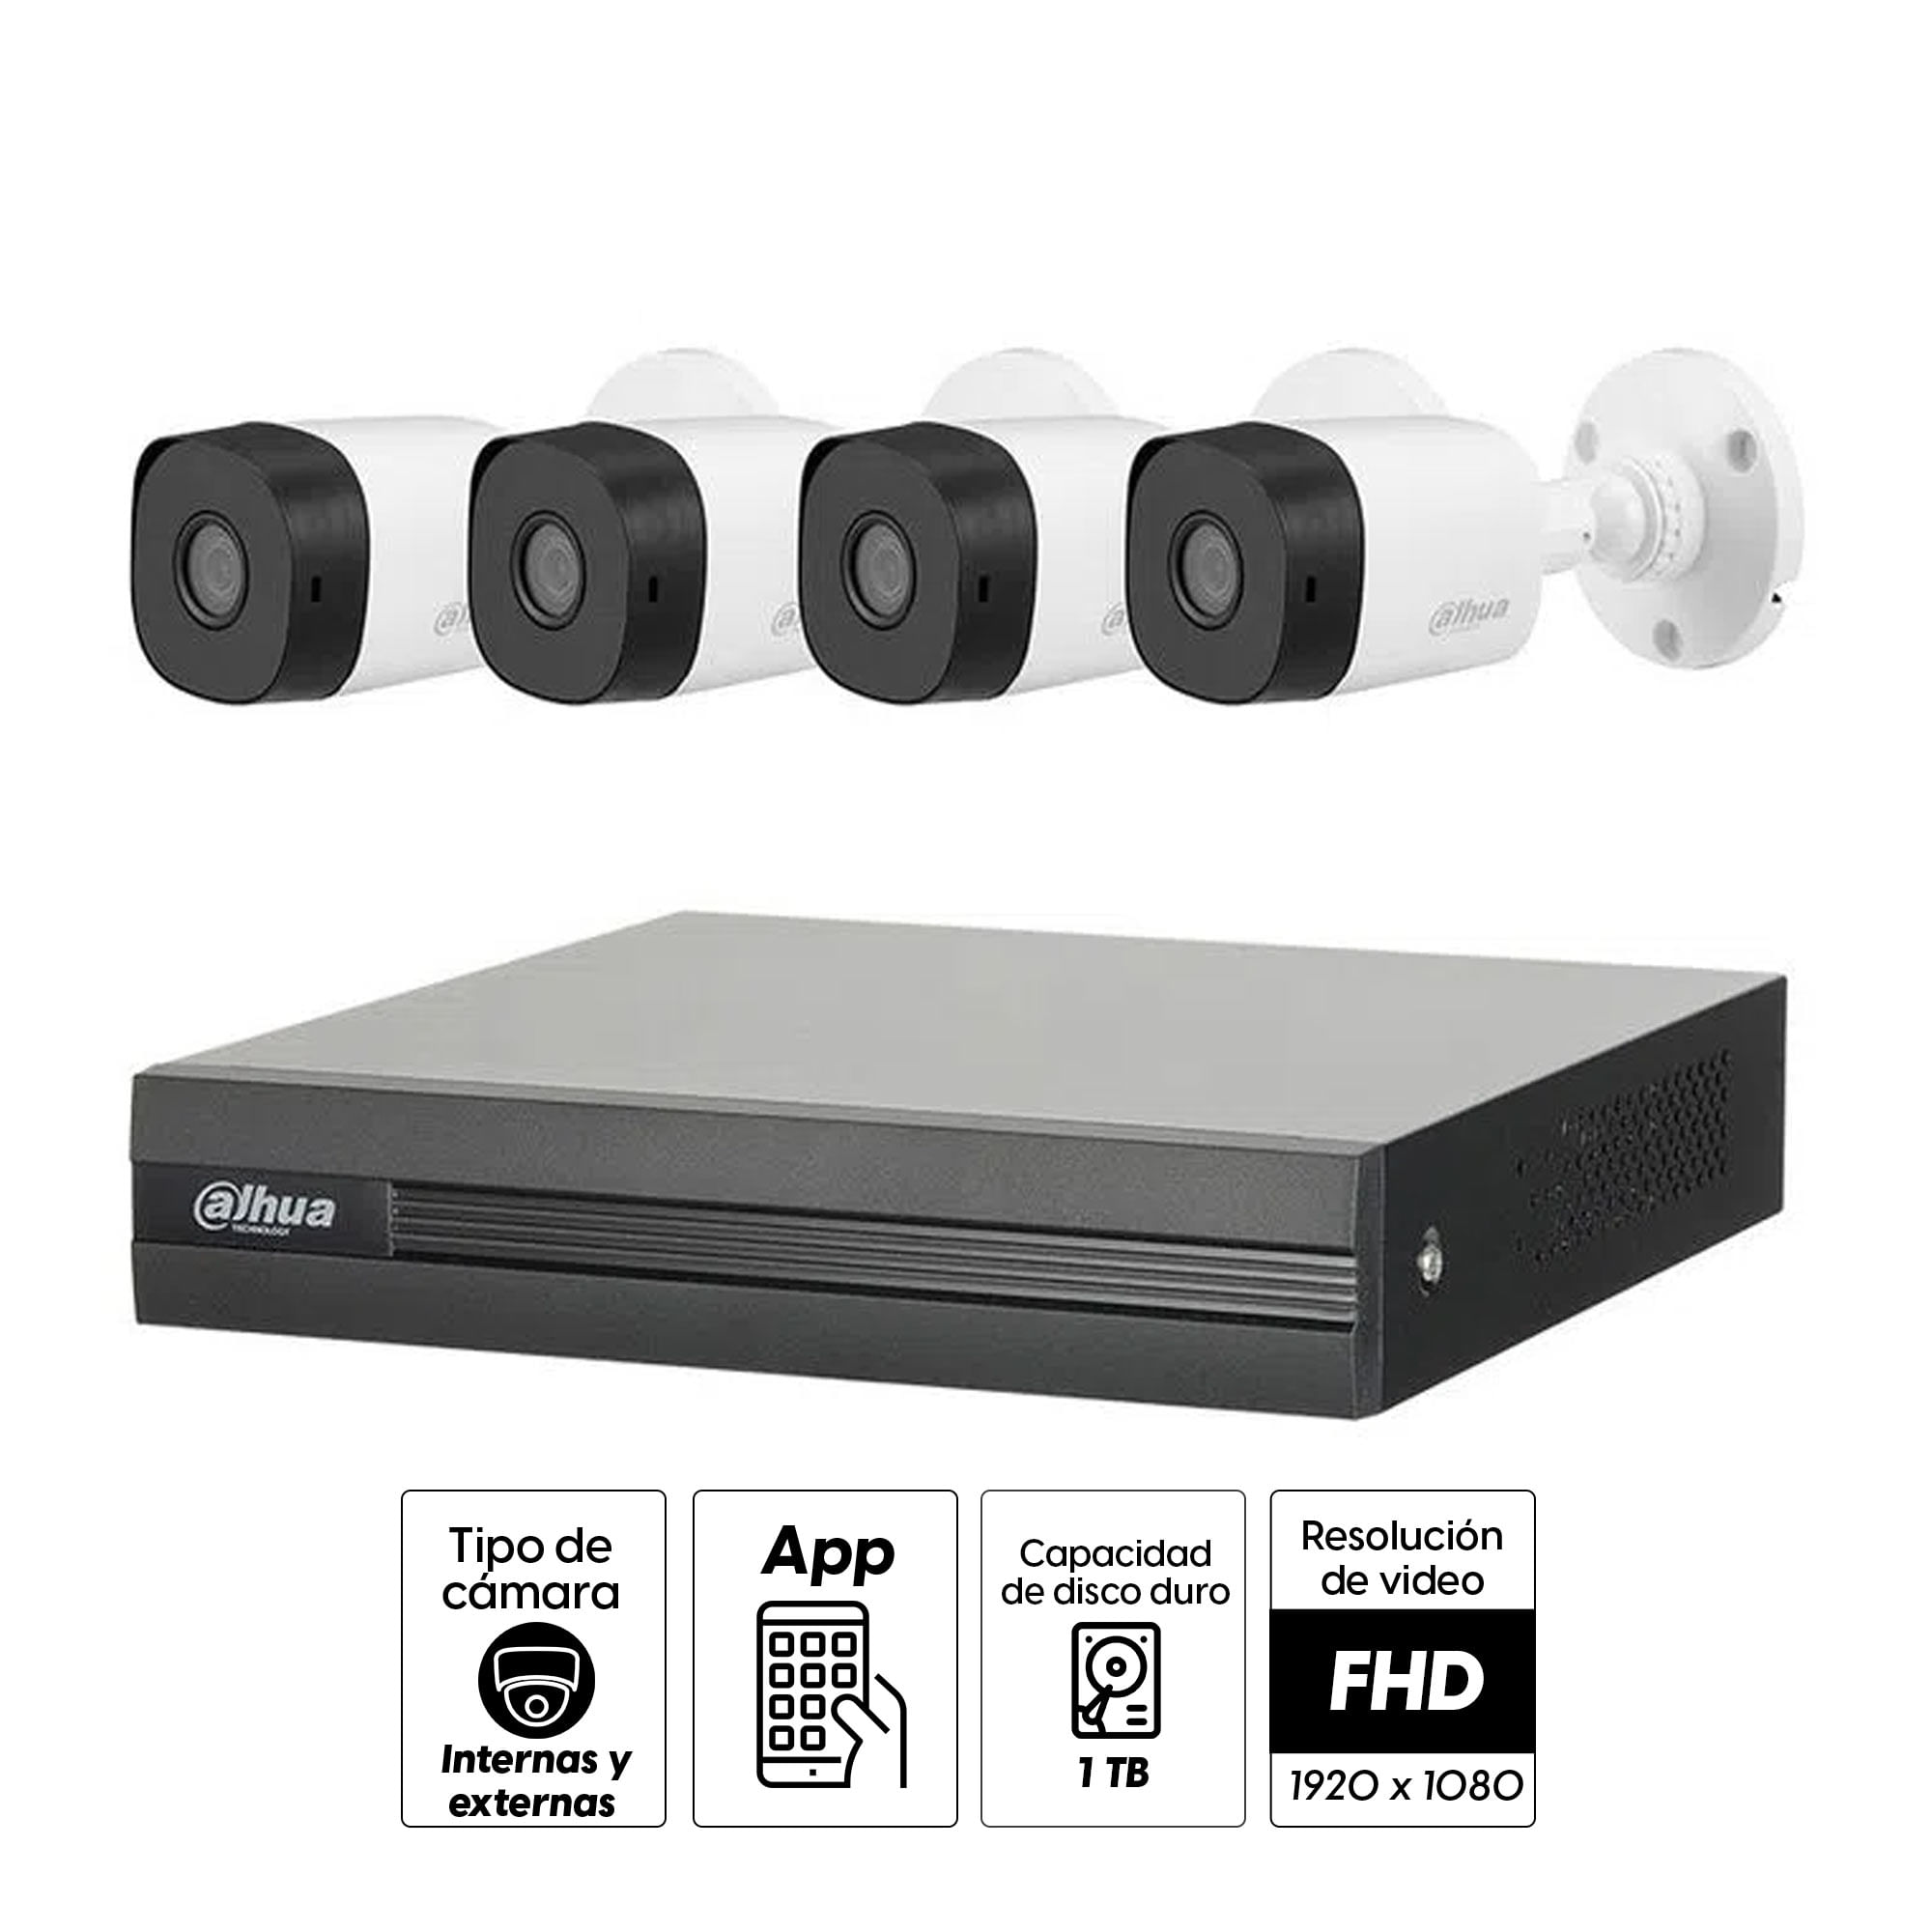 seguridad Dahua 4 cámaras 1080P, dvr ch, disco duro 1TB -